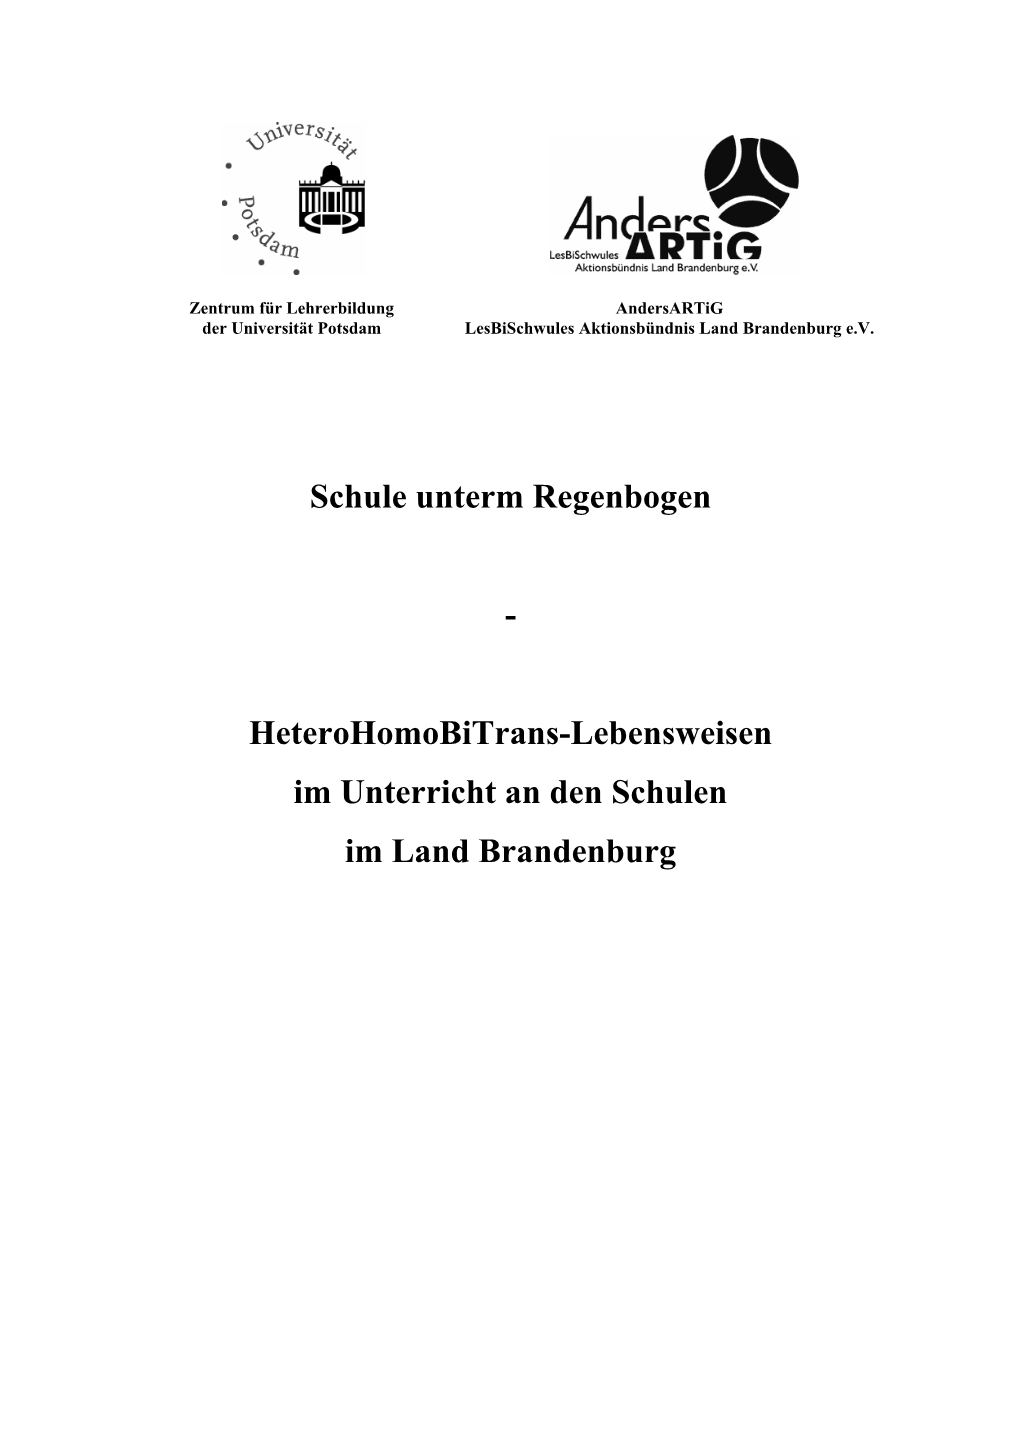 Heterohomobitrans-Lebensweisen Im Unterricht an Den Schulen Im Land Brandenburg